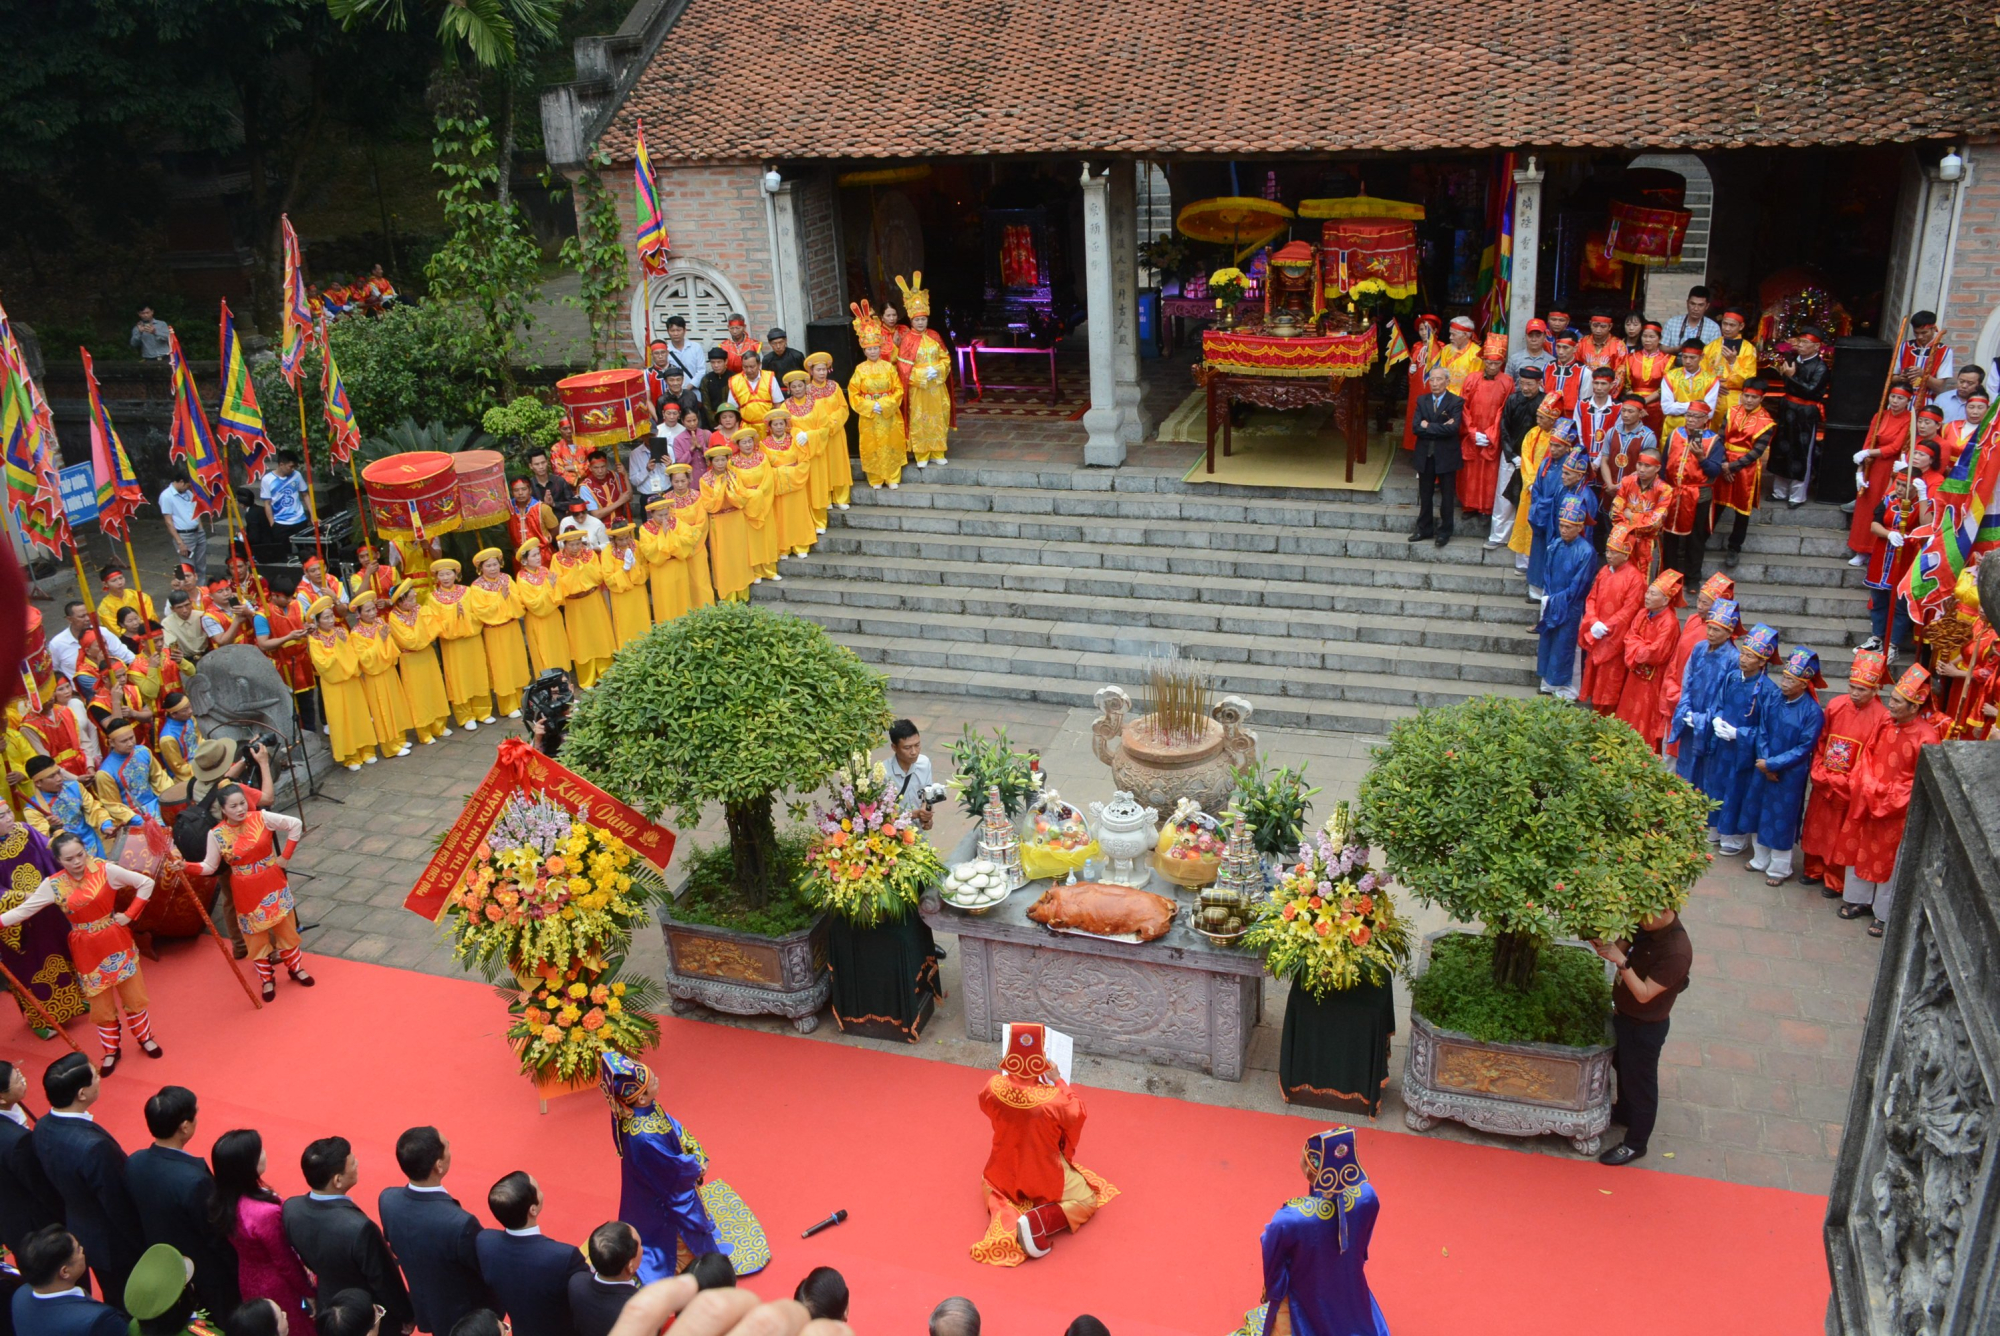 Nghi lễ tấu trình chúc văn, dâng hương tại Lễ hội Đền Bà Triệu năm 2023

